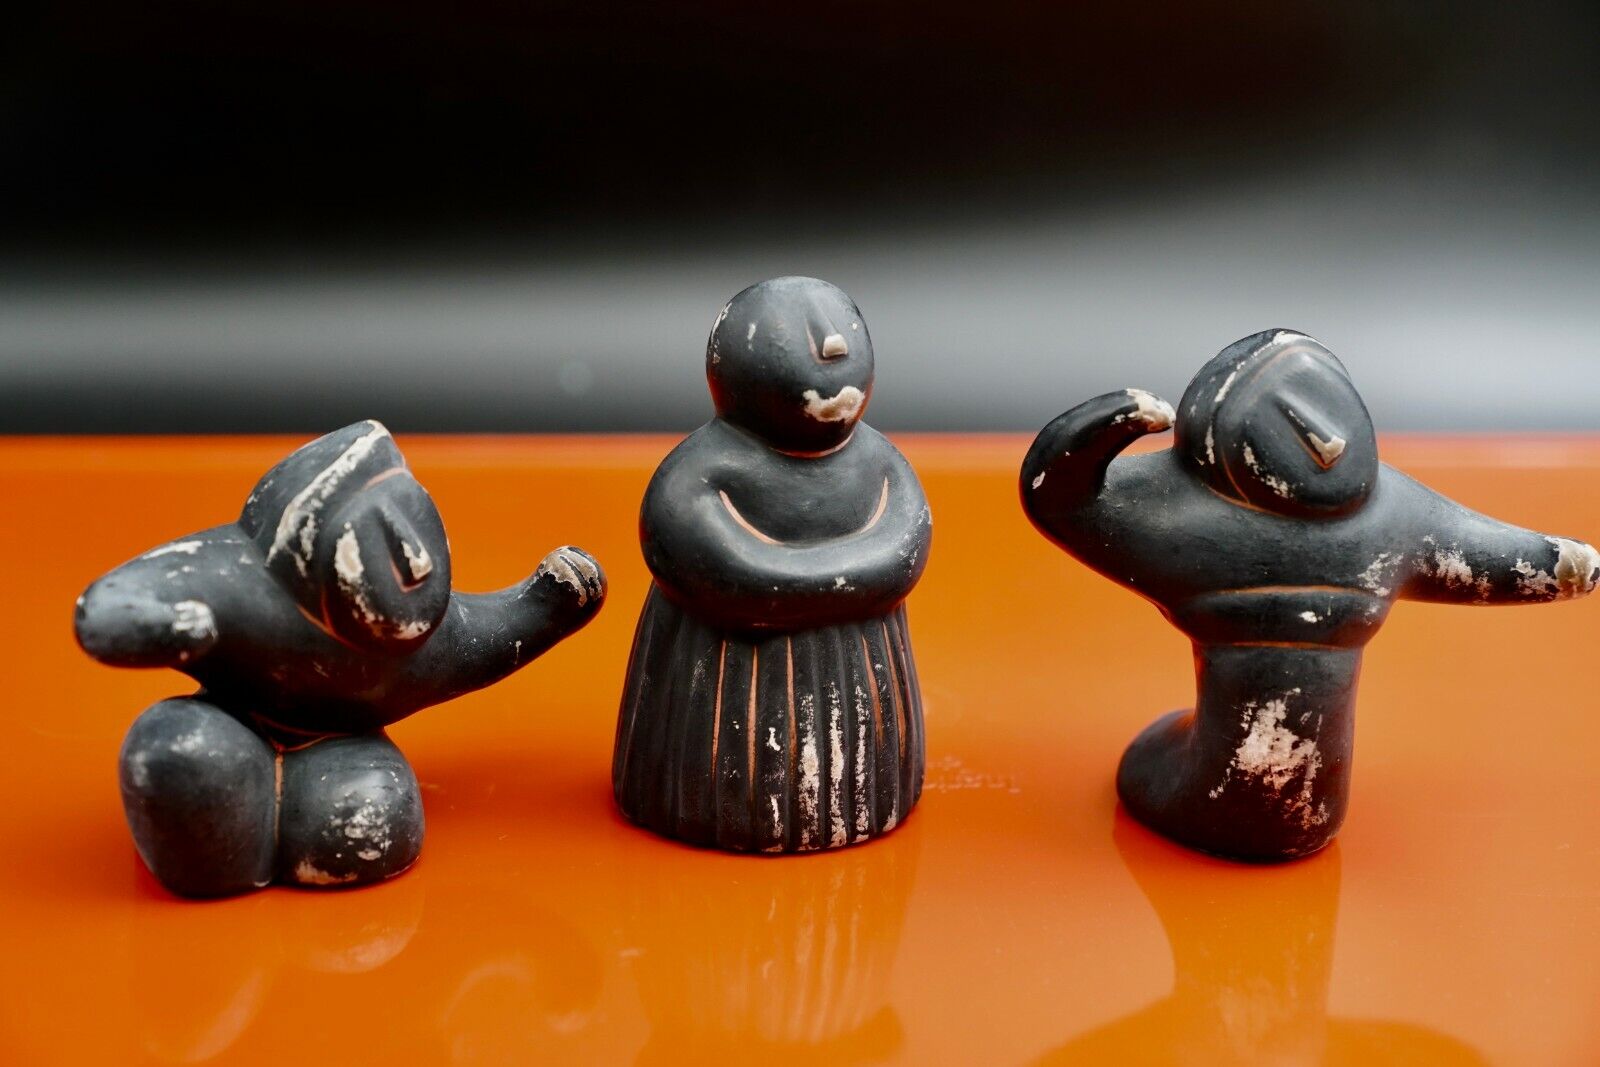 Vintage Japanese Black Pottery Minimalist Figurines Nice wear